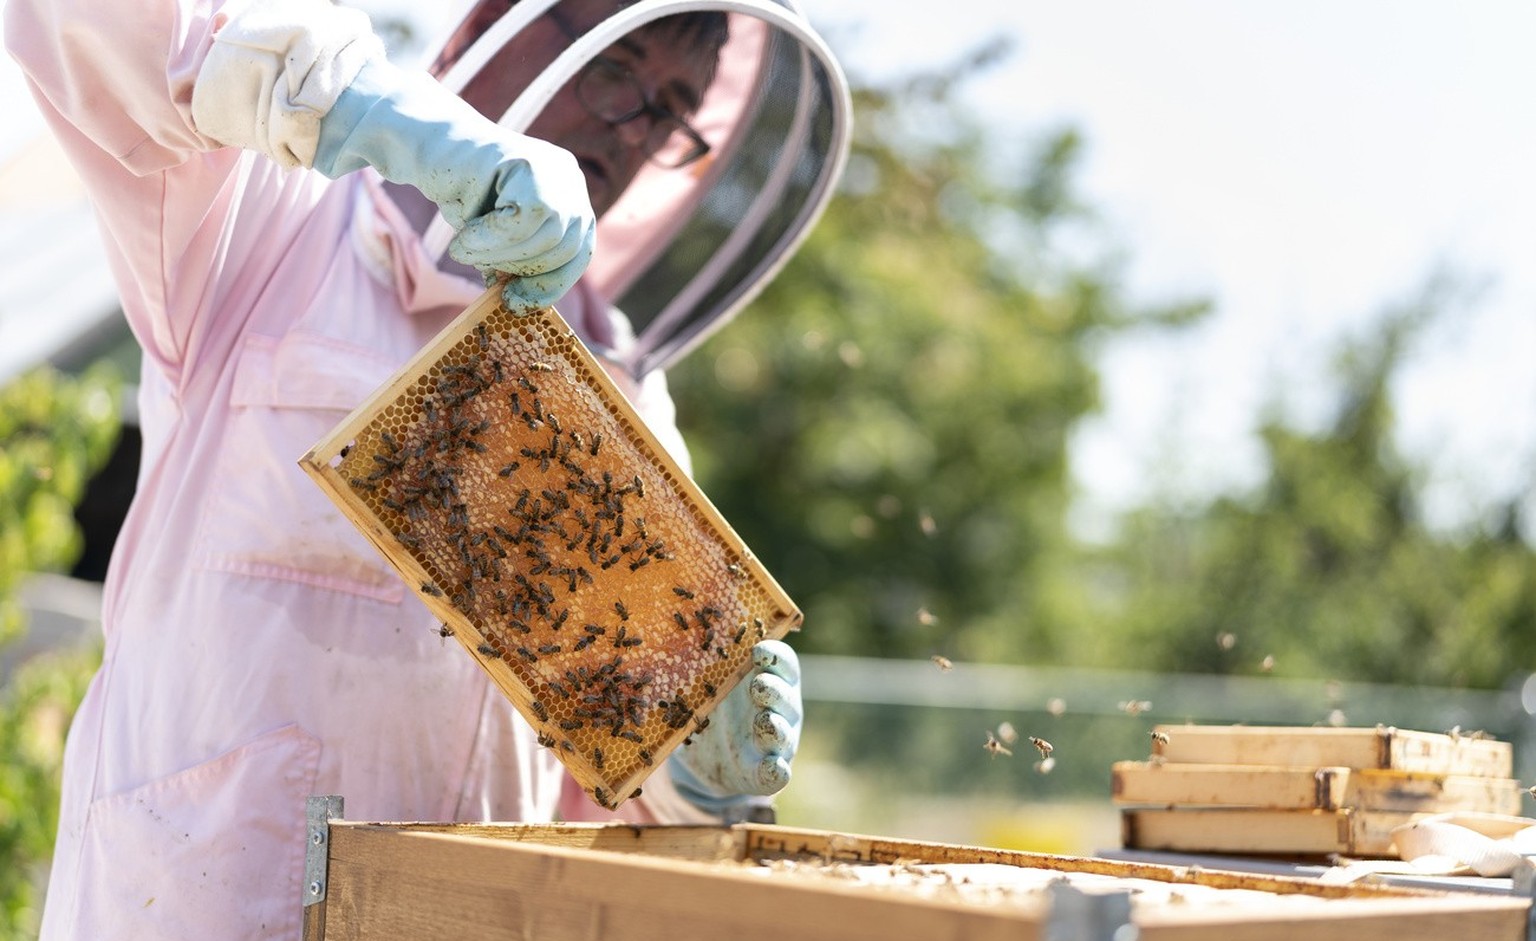 Der Imker Klaus Mueller nimmt am Ende der Saison die Rahmen eines Bienenstocks heraus, um den von den Bienen produzierten Honig zu sammeln, fotografiert am Donnerstag, 28. Juli 2022 auf dem Dach des Q ...